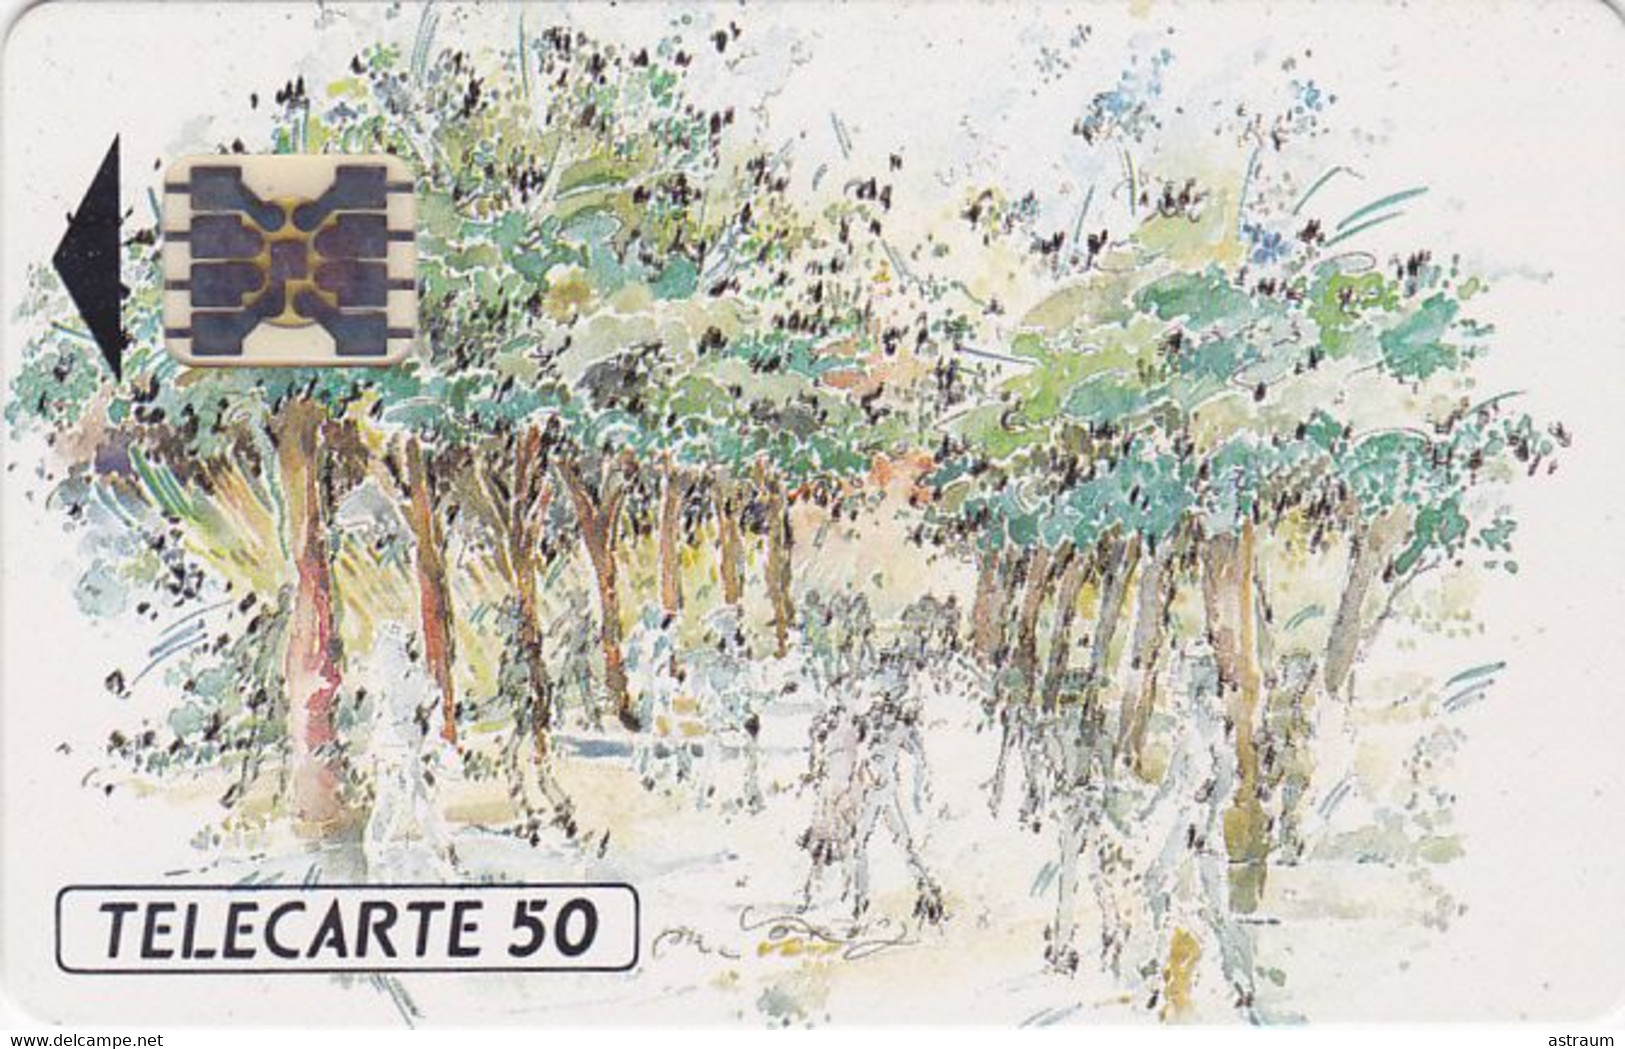 Telecarte Privée - D489 - Neuve - A.I.R.C.T.  ( Michel Letourmy )- SC5ab - 1000 Ex  - 50 Un - 1990 - Privat